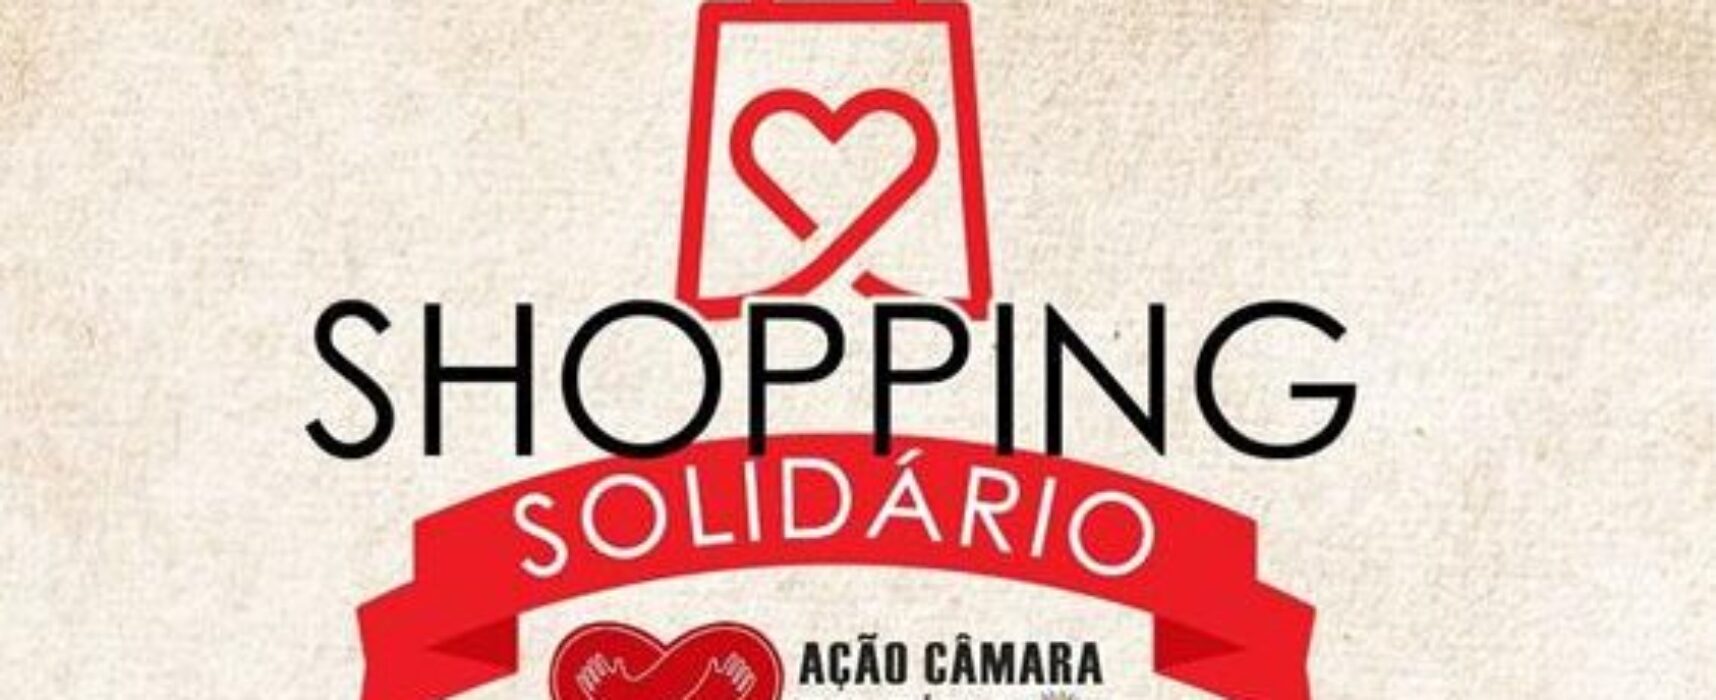 Câmara de Ilhéus promove Shopping Solidário no Salobrinho para distribuir doações aos afetados pelas chuvas